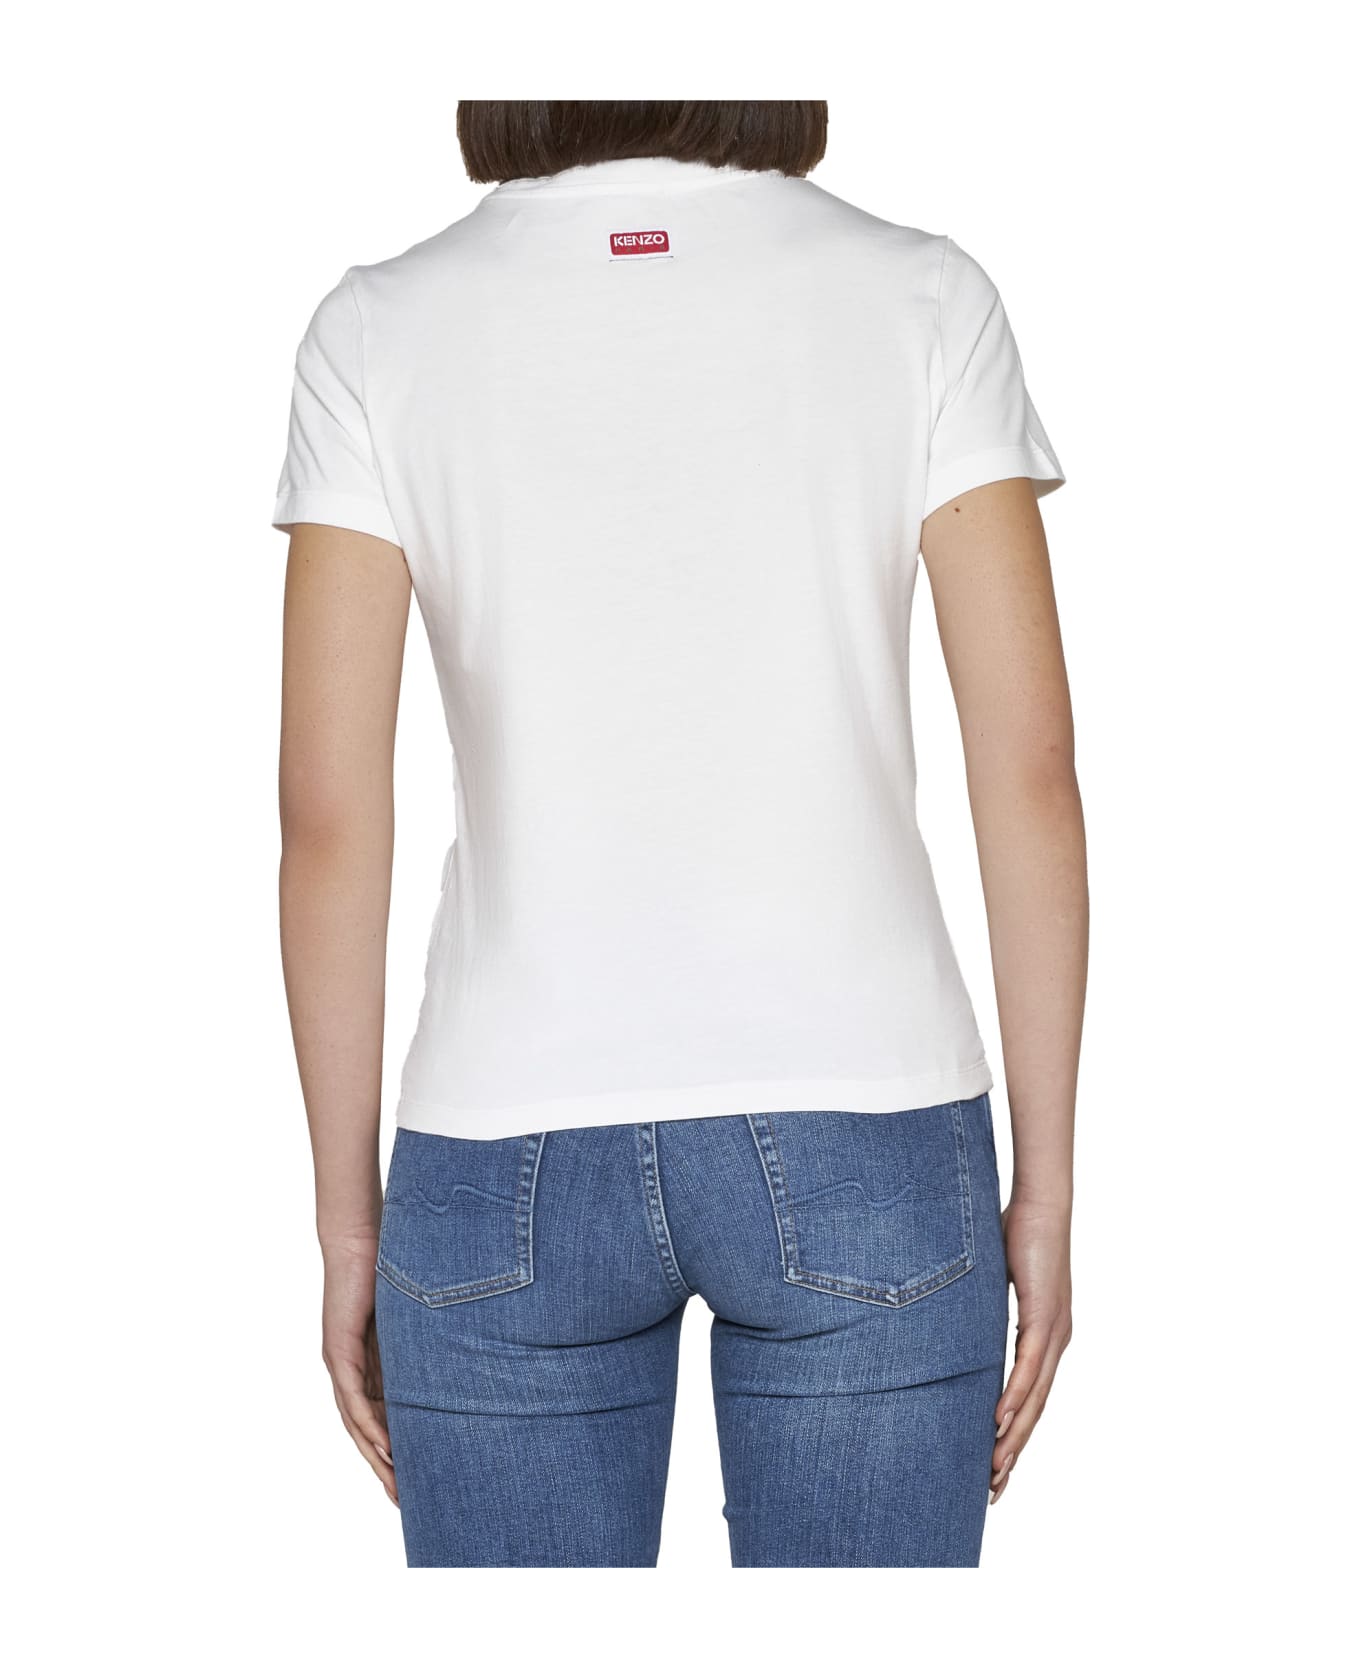 Kenzo Pixel T-shirt - White Tシャツ